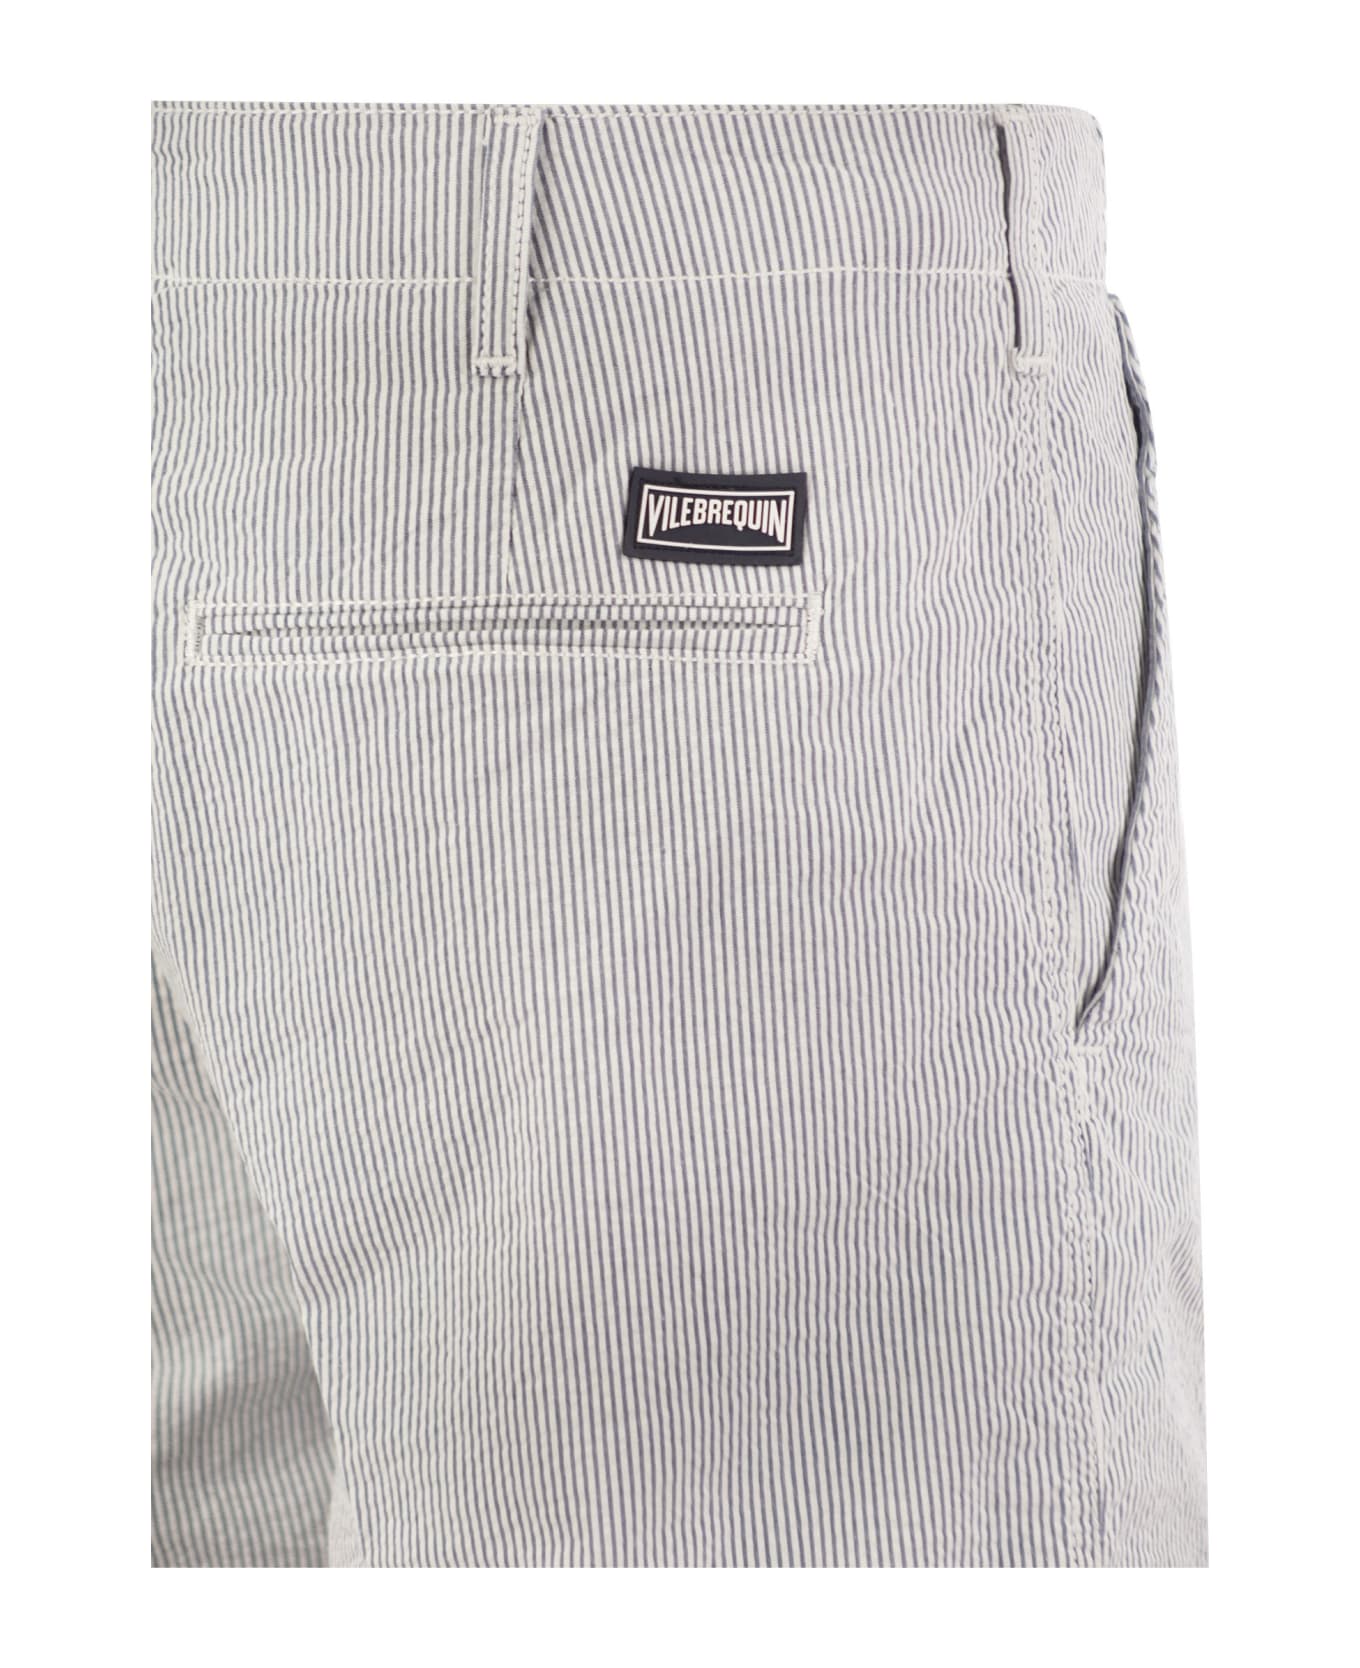 Vilebrequin Micro Striped Cotton Bermuda Shorts - Blue ショートパンツ